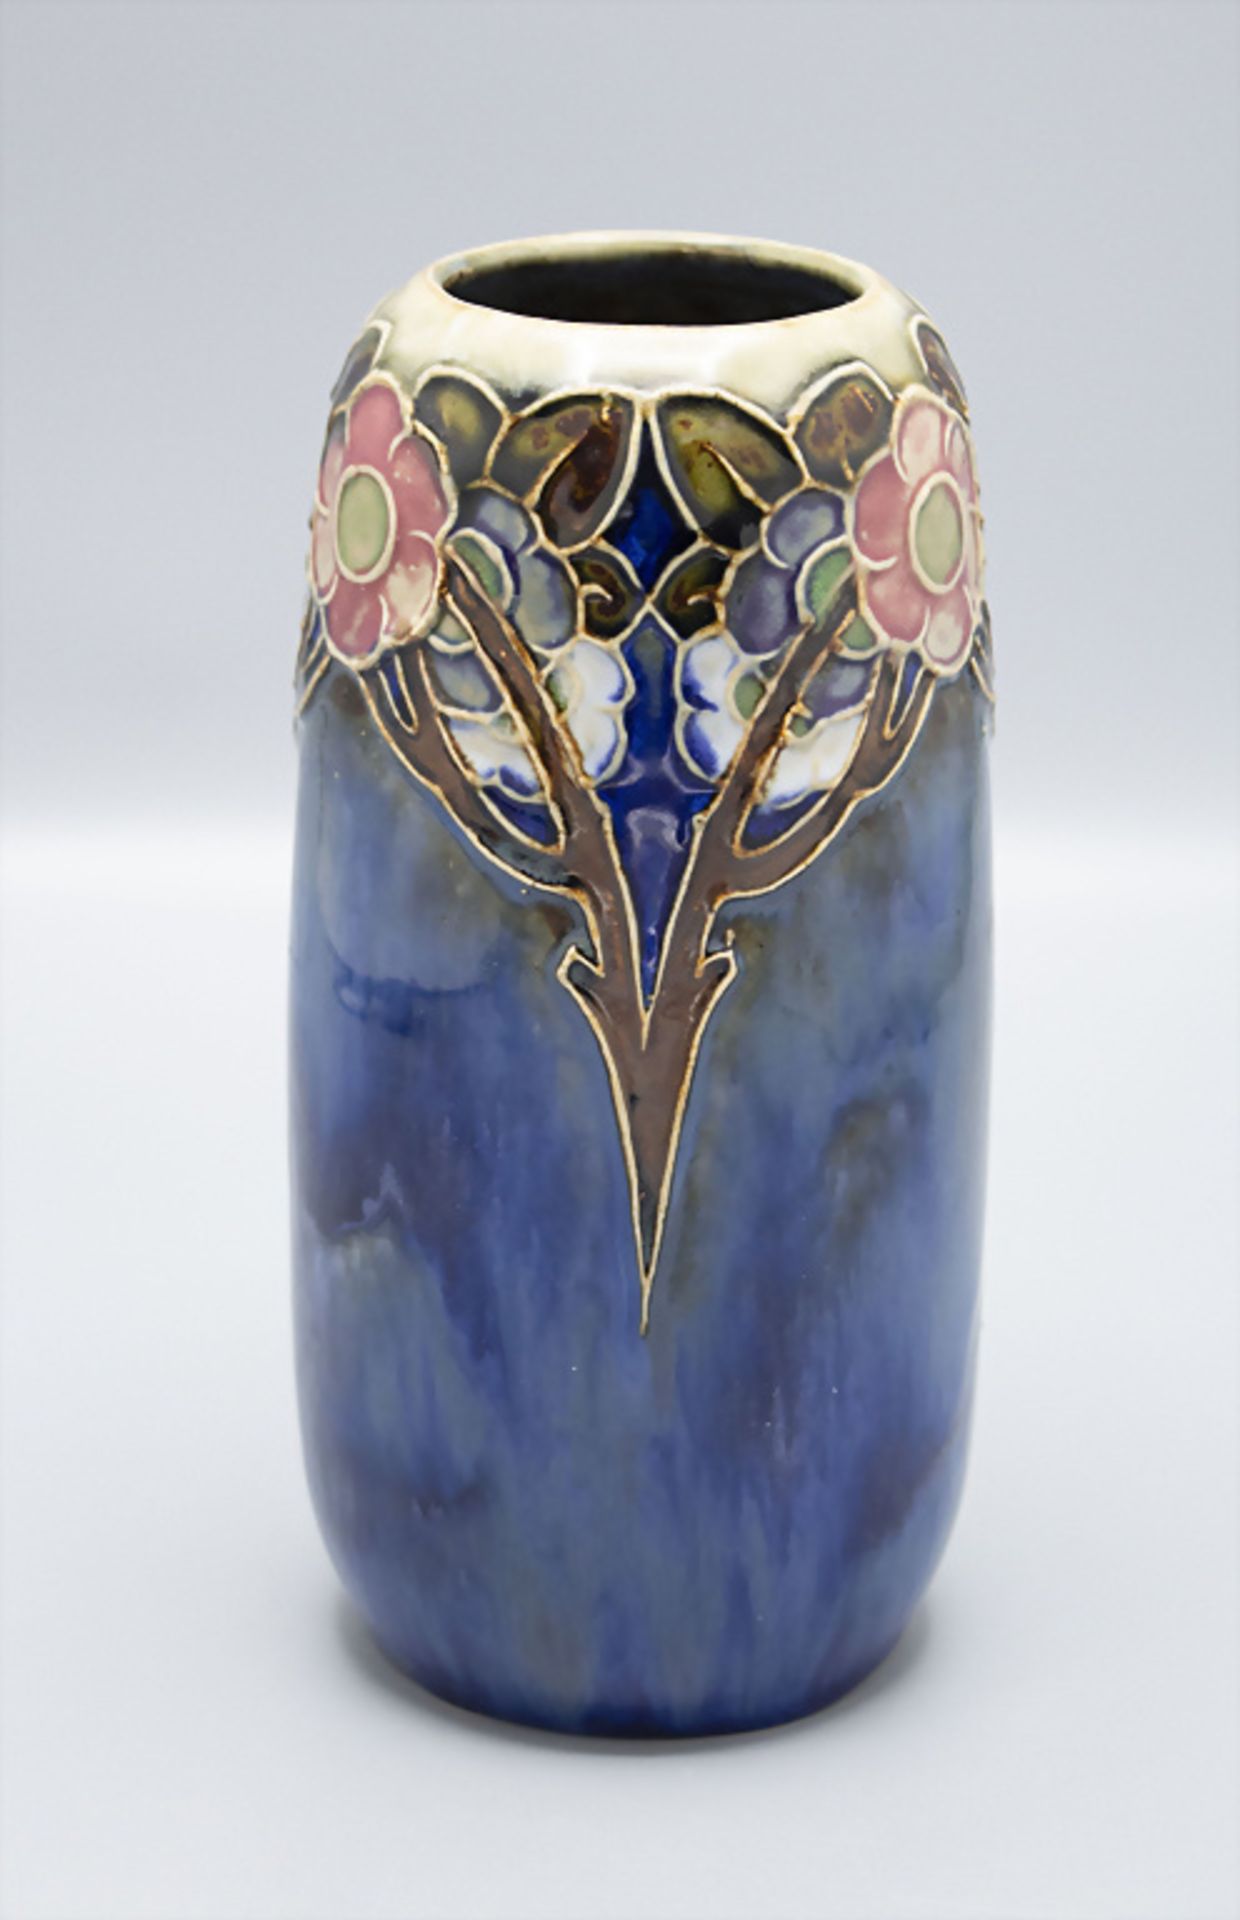 Jugendstil Vase mit stilisierten Blütenzweigen / An Art Nouveau stoneware vase with stylized ...